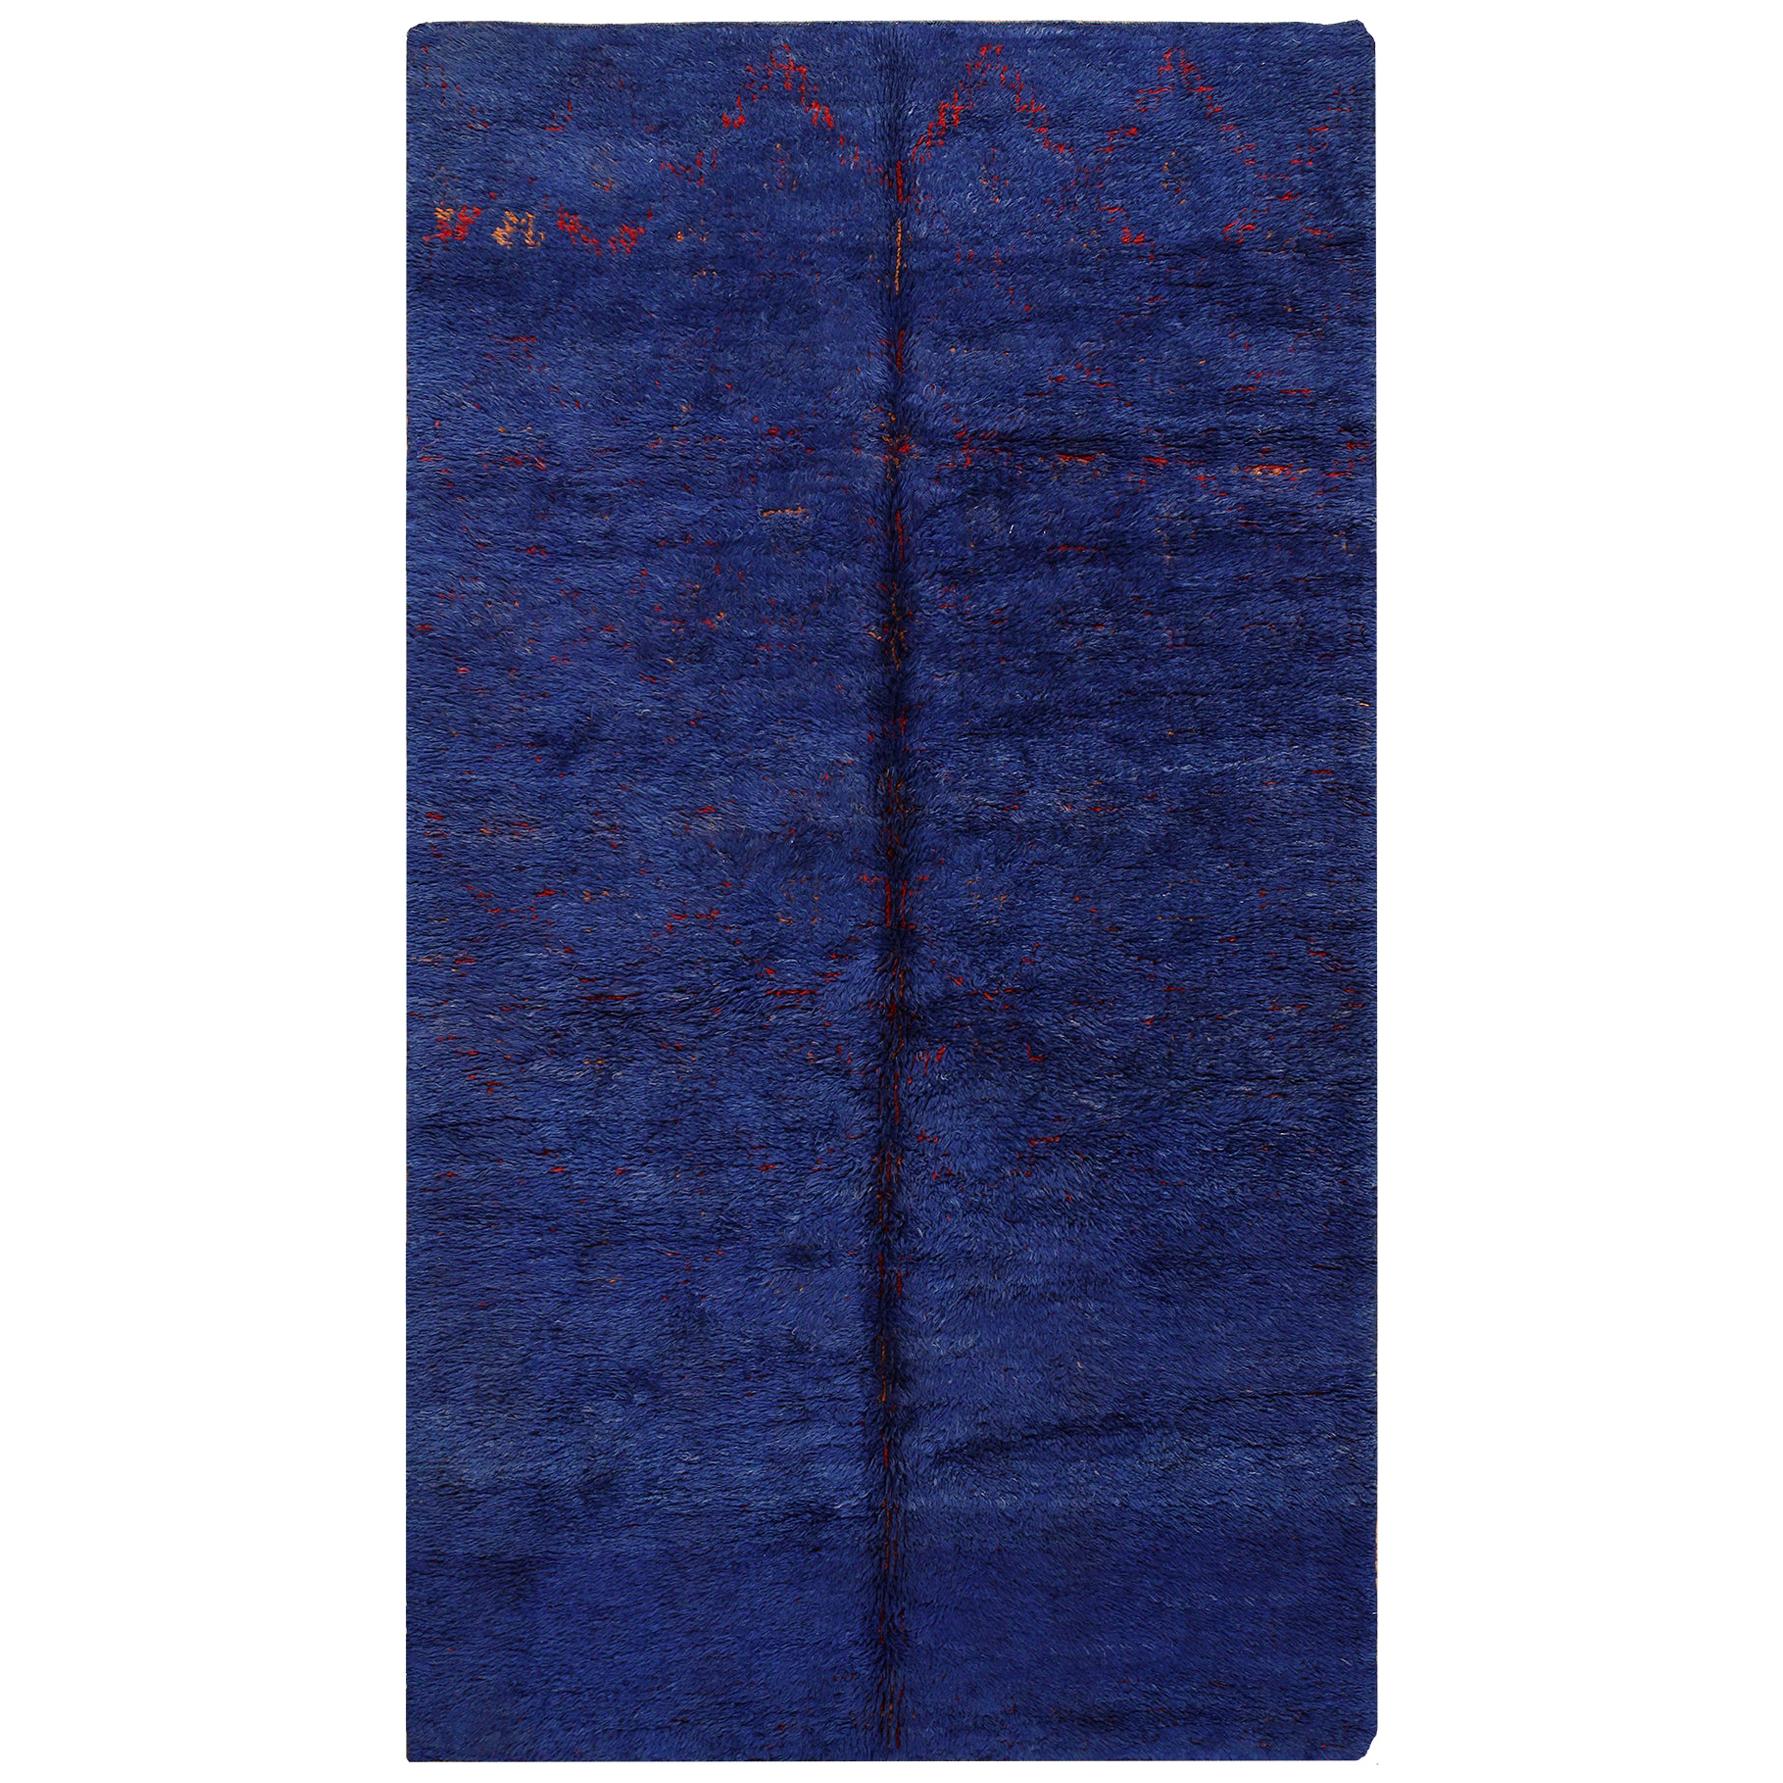 Vintage Berber Moroccan Blue Rug. Size: 6 ft x 10 ft 9 in